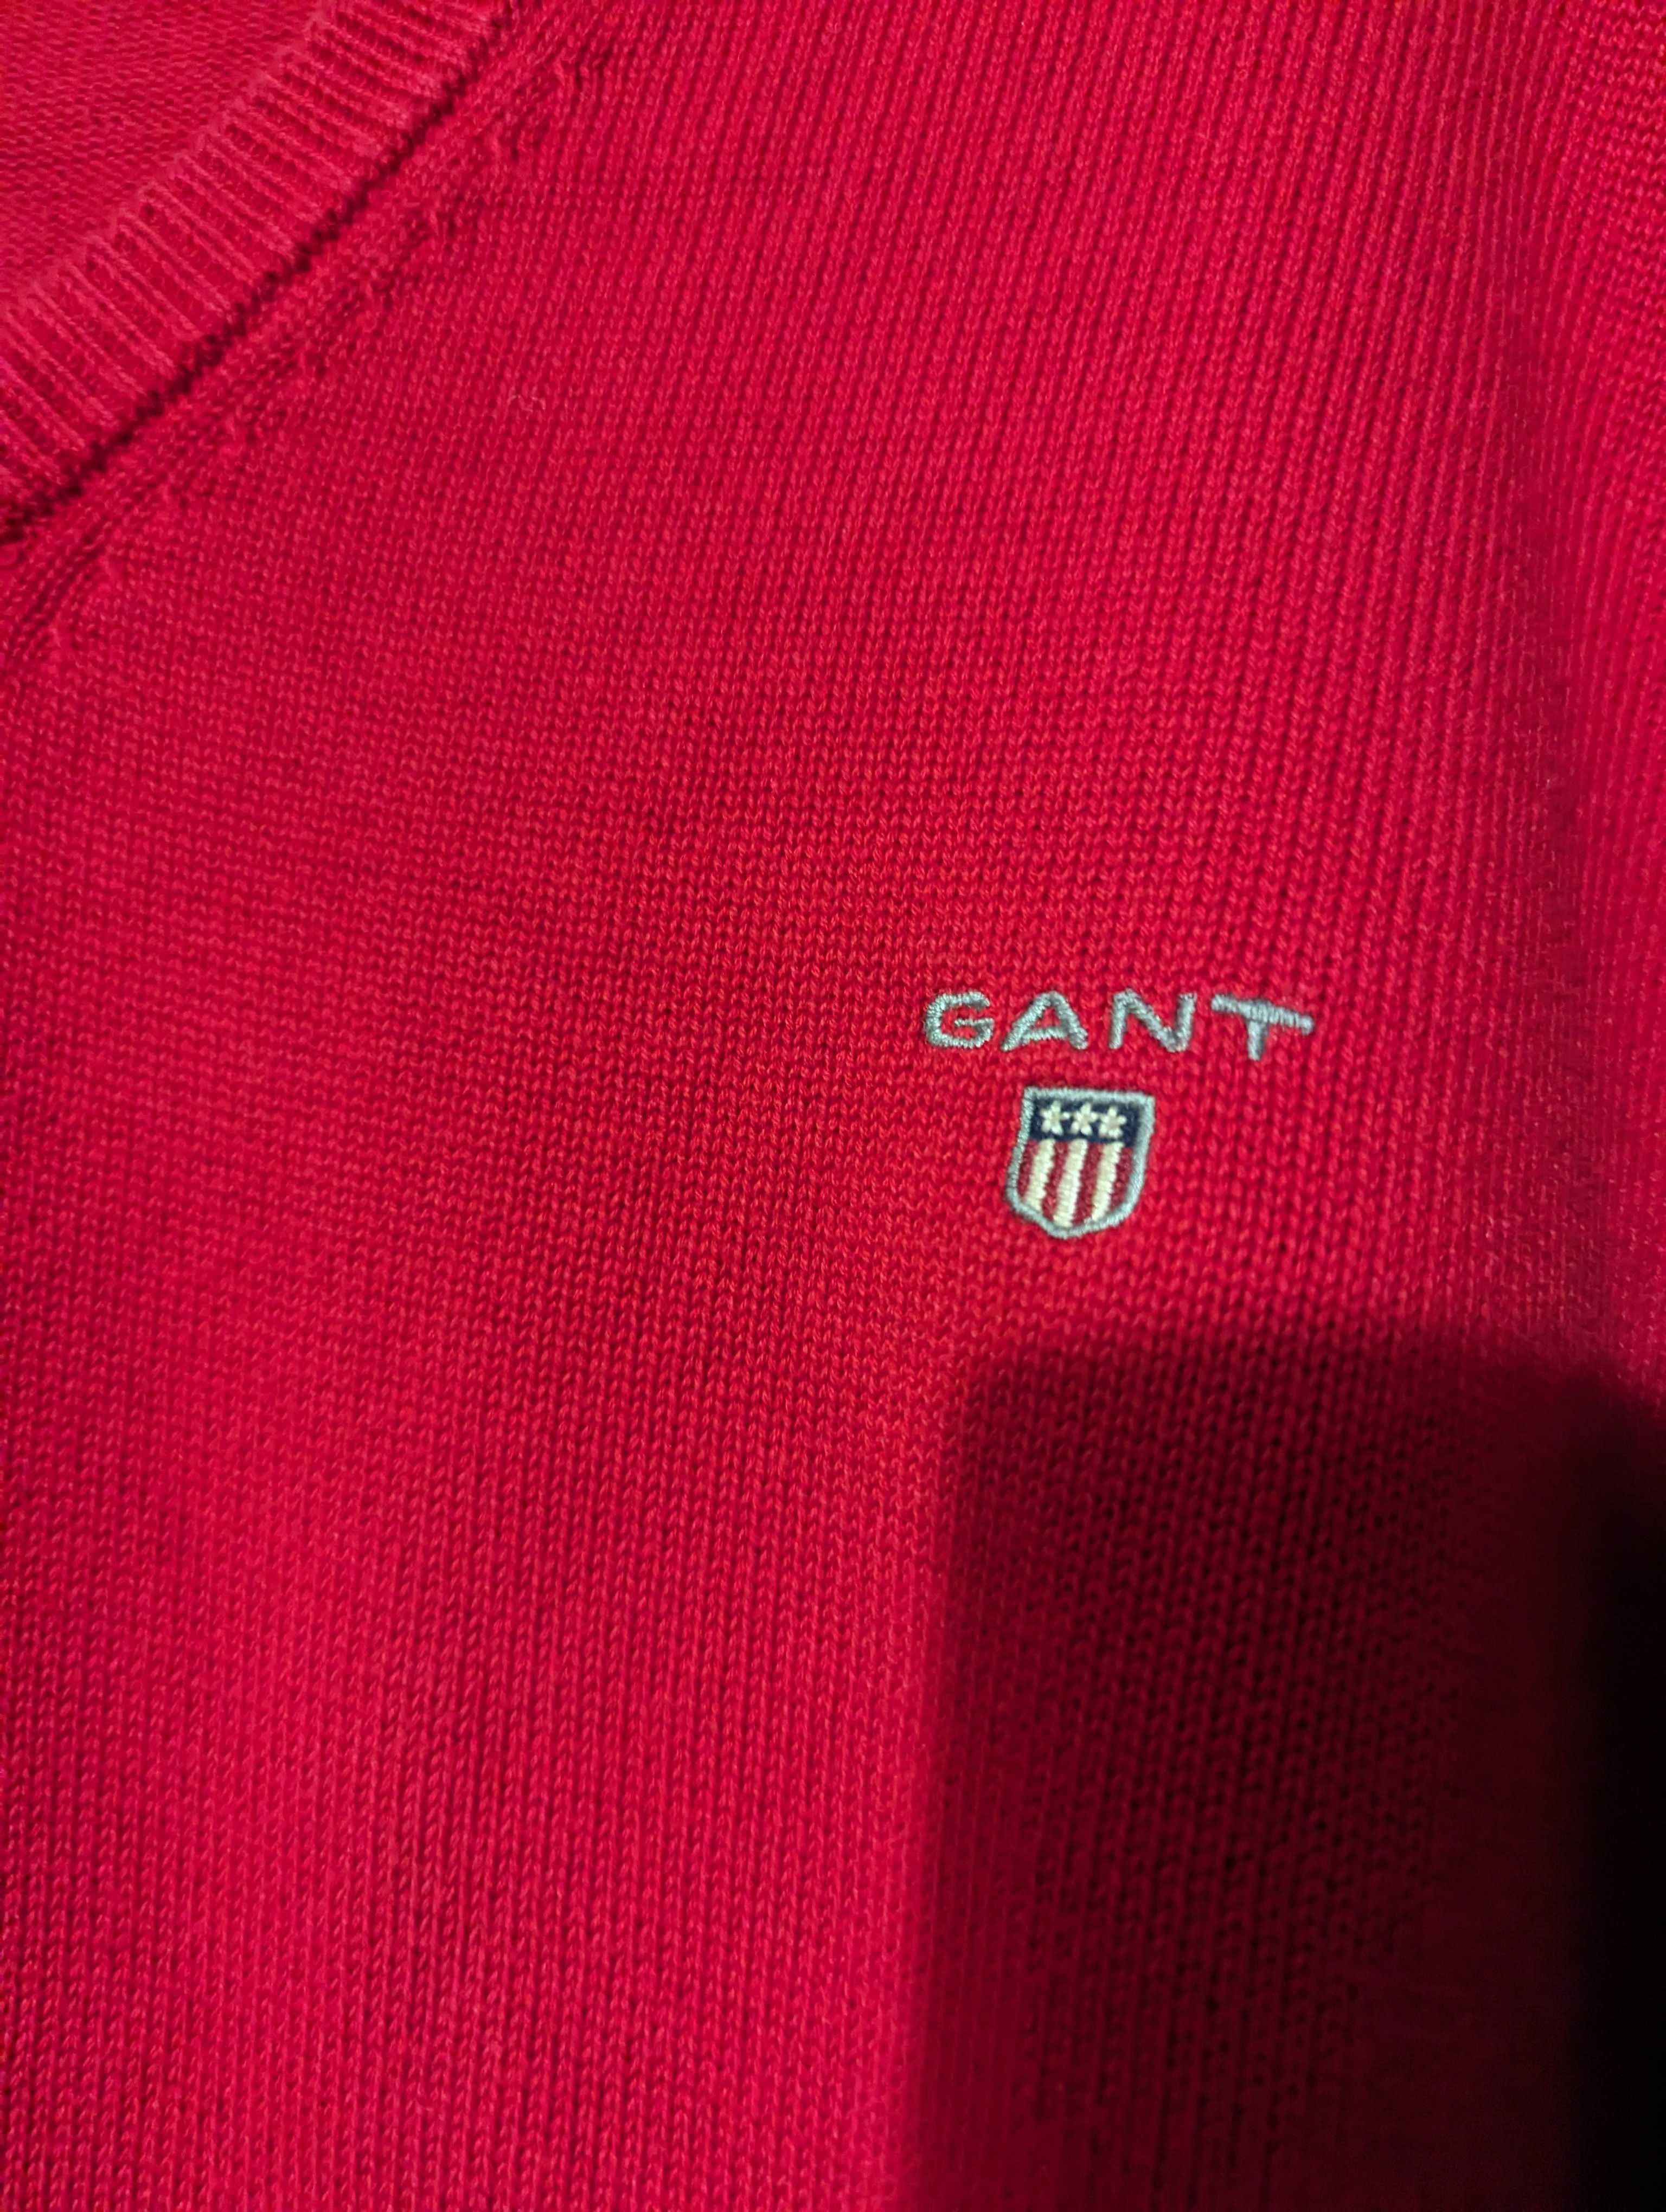 Мужской пуловер, кофта, джемпер Gant, 
2 XL